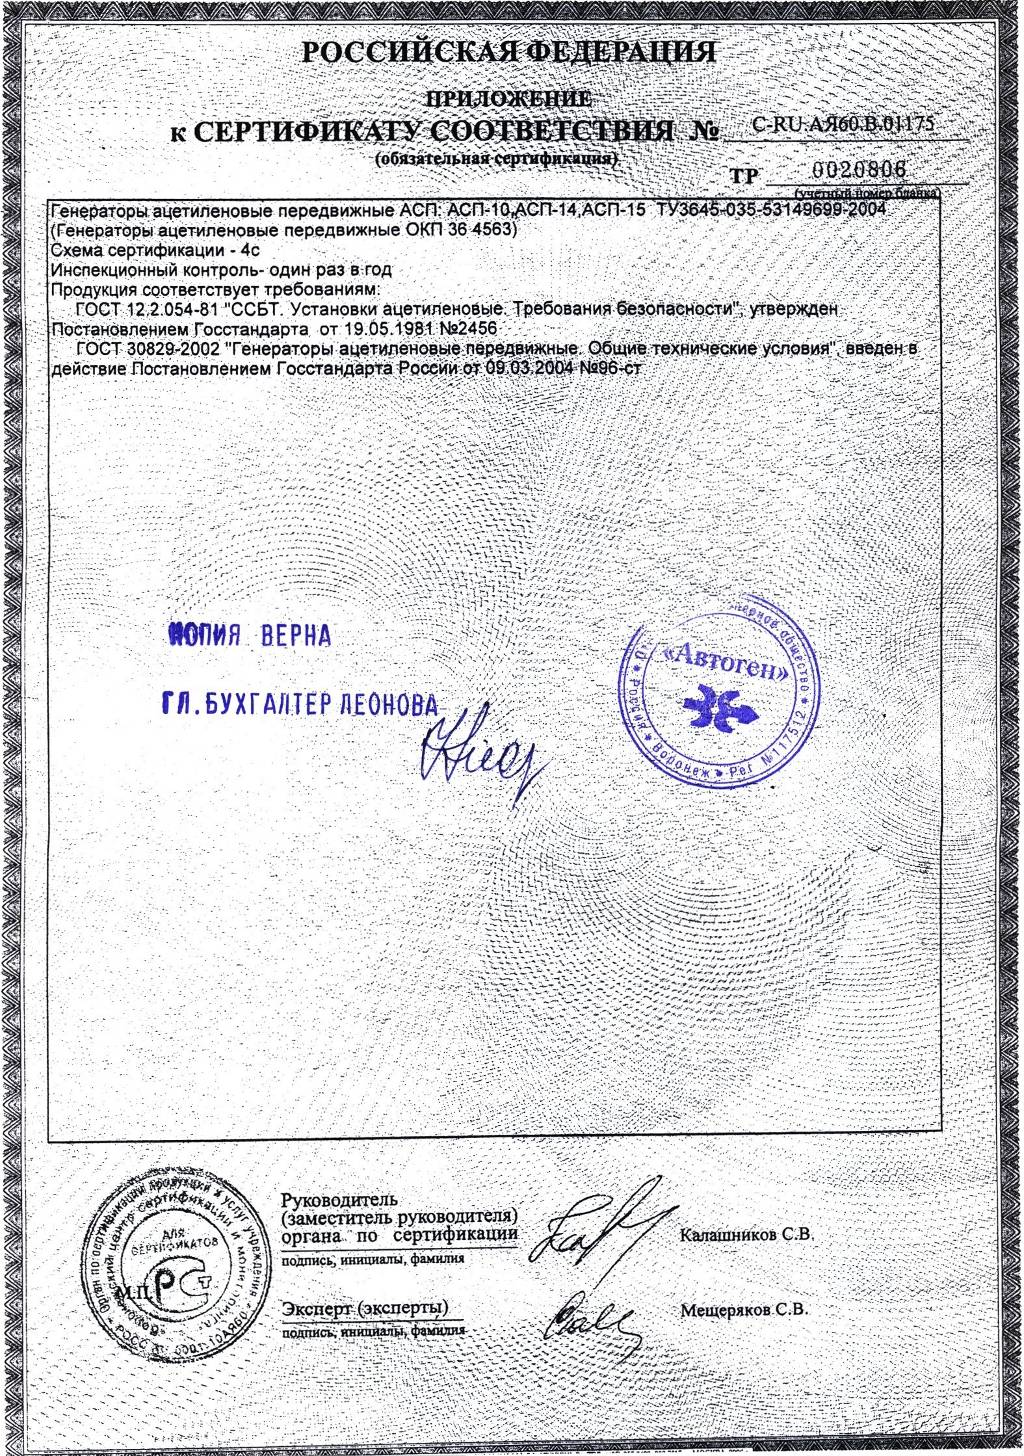 Сертификат на генератор АСП-10